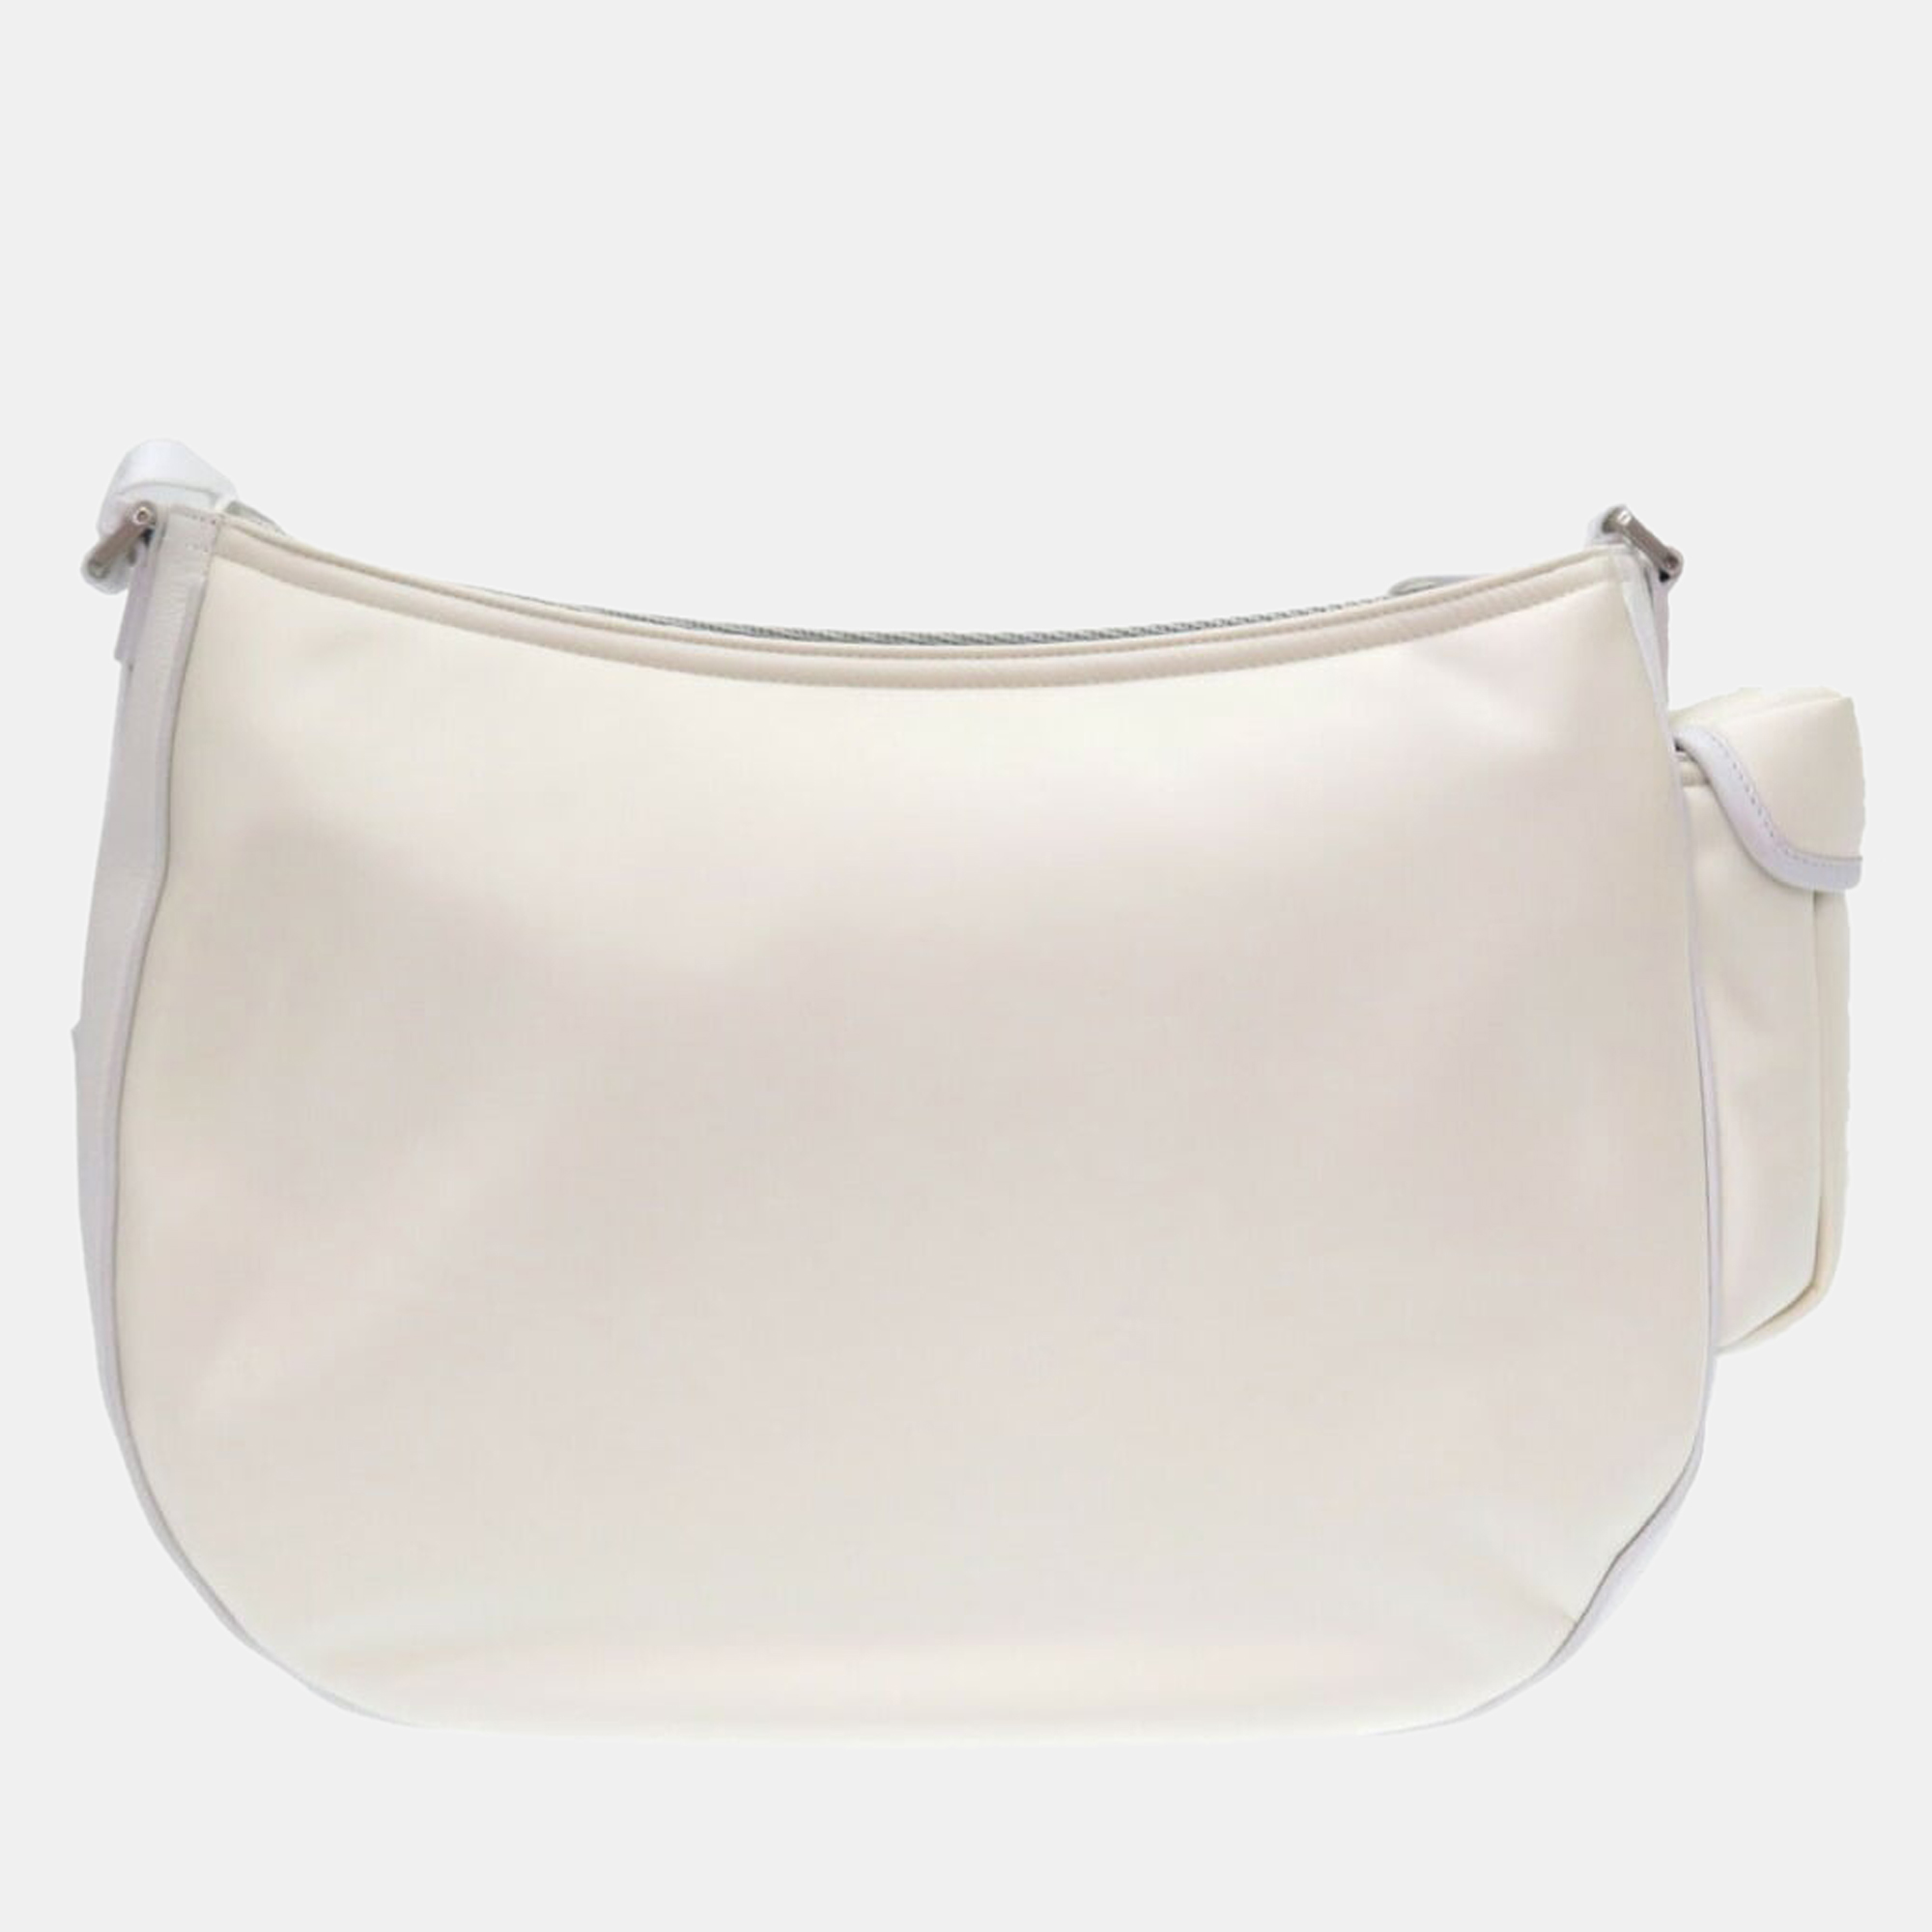 Dior White Canvas Leather Roller Coaster Soft Saddle Shoulder Bag